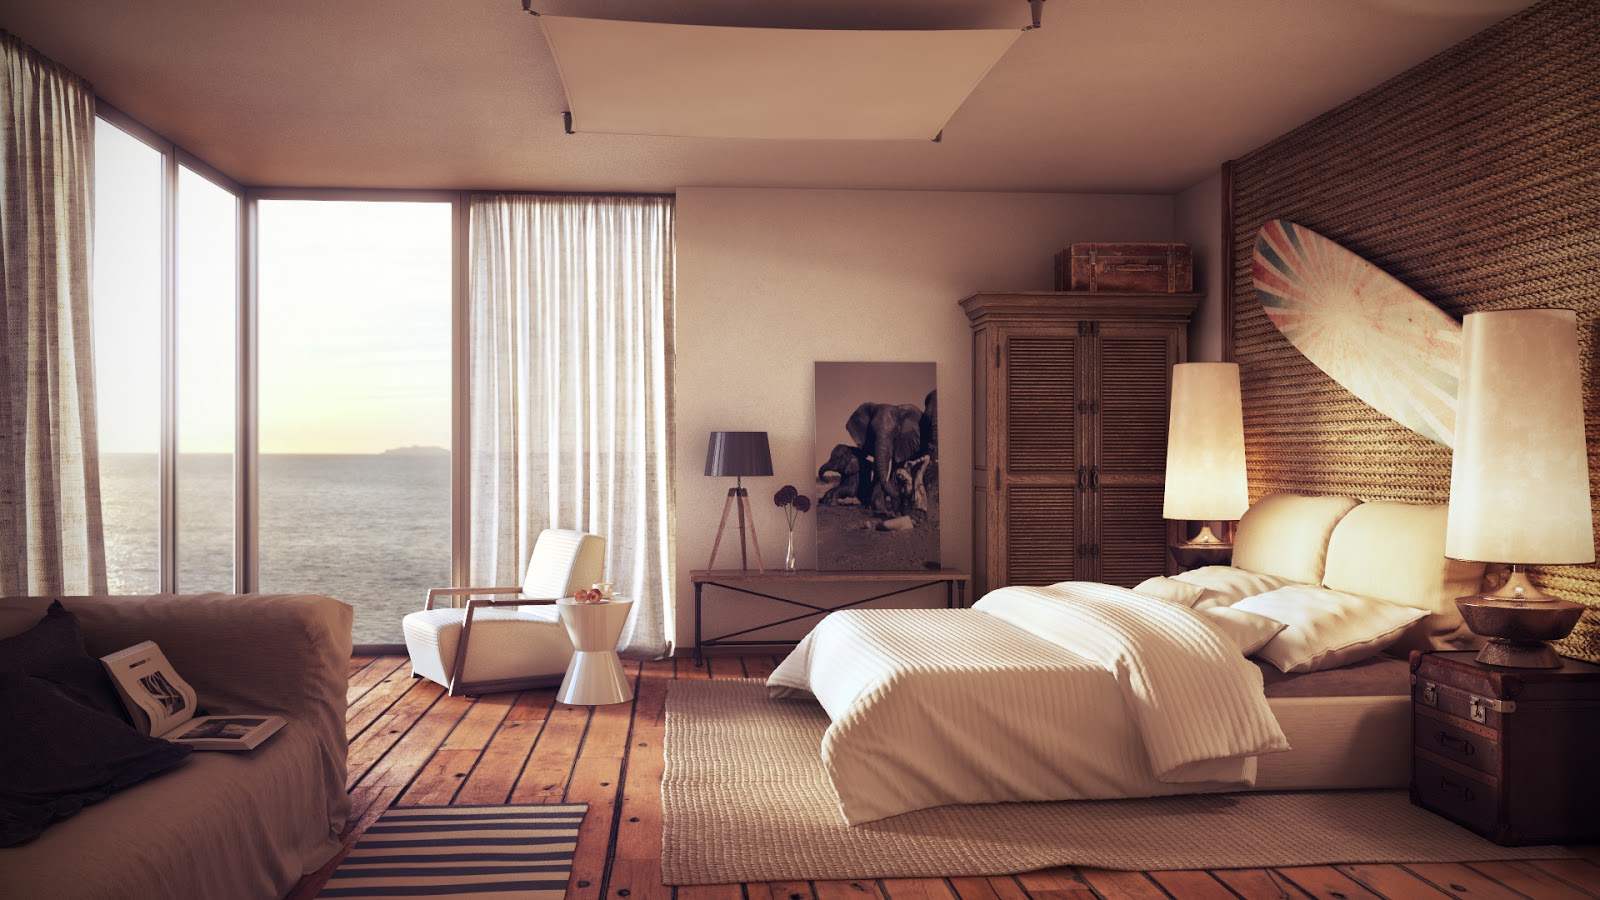 Ευρύχωρο μοντέρνο υπνοδωμάτιο με χαλαρωτικά χρώματα